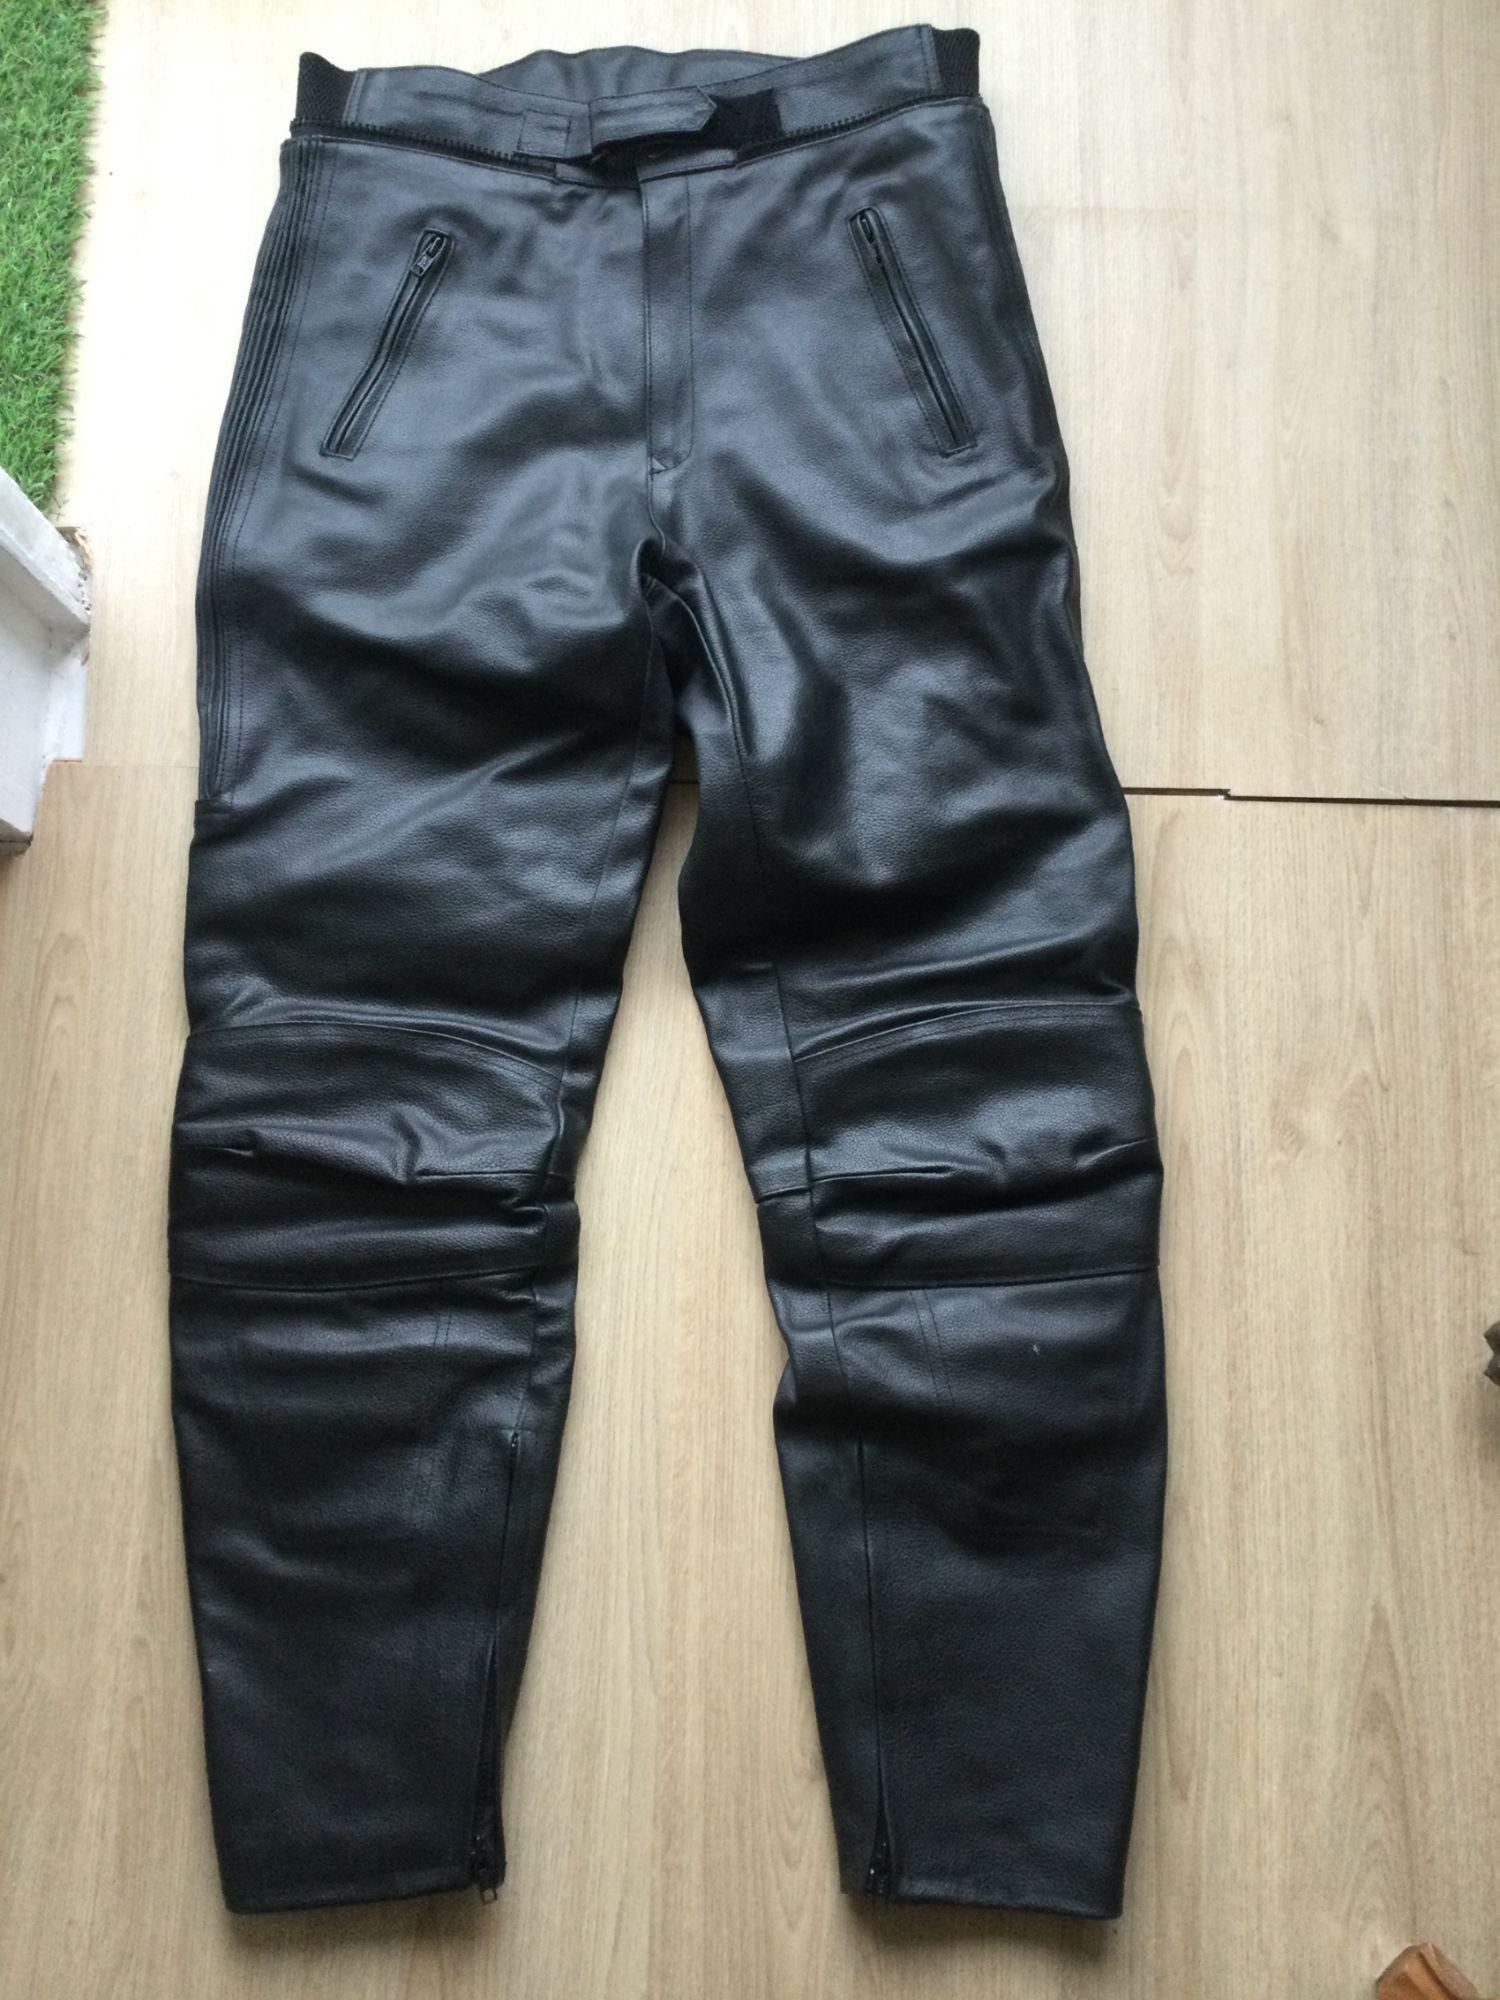 Pantalons cuir en cuir vachette-ref TROUSER noir vachette-noir